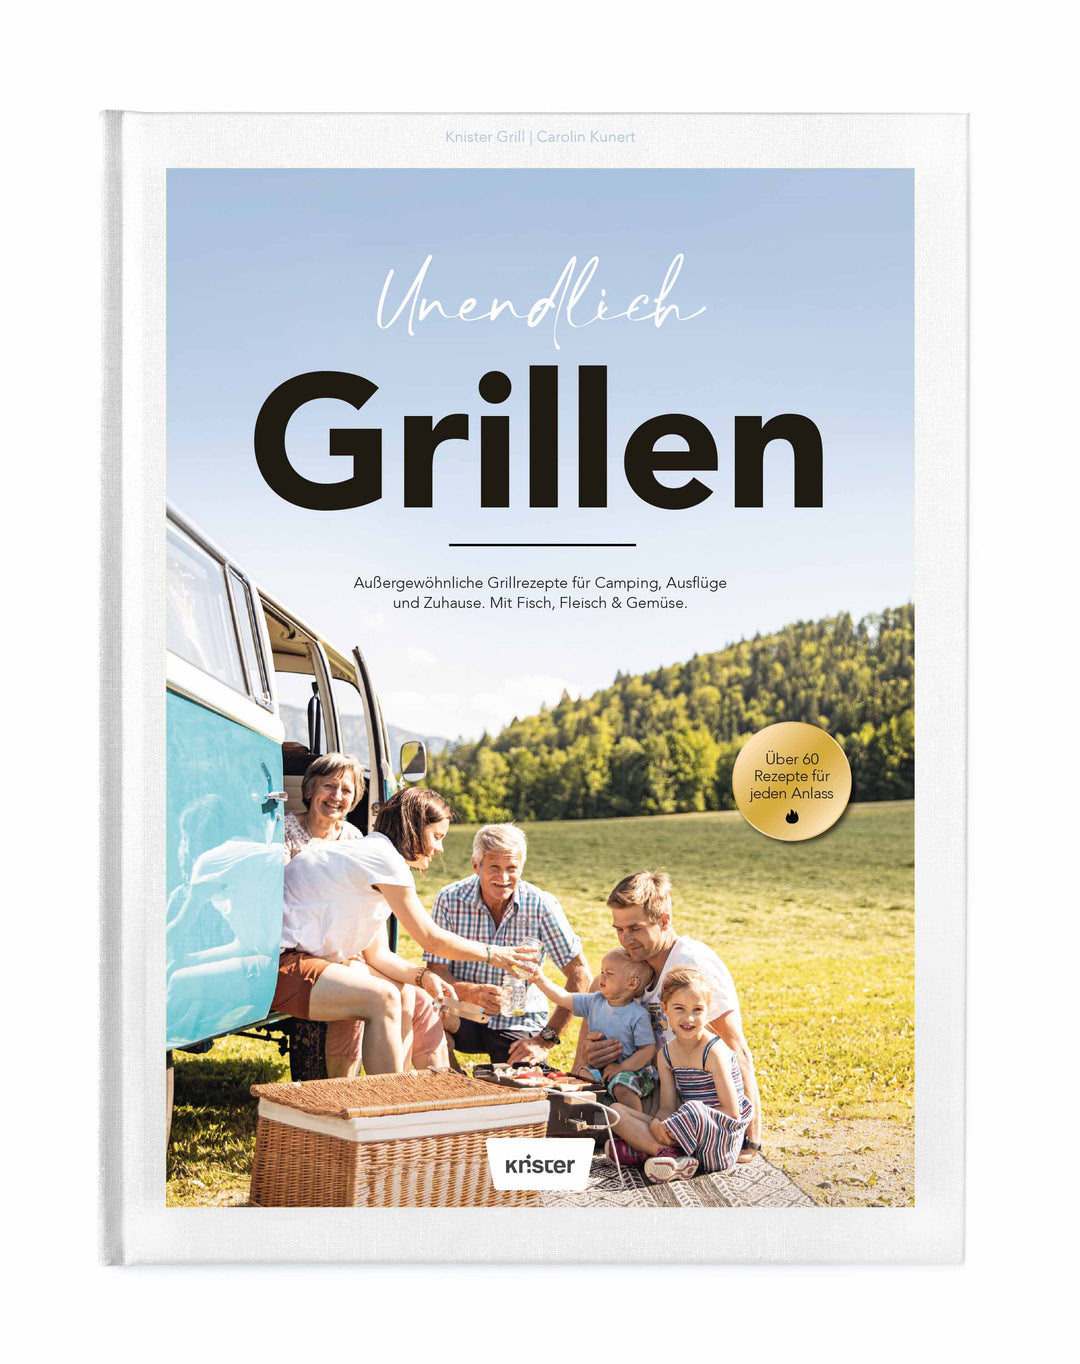 Knister Gas Grill lackiert + Plancha Platte + Grill Zange + 4er Set Grillspieße + Unendlich Grillen (Grillbuch)